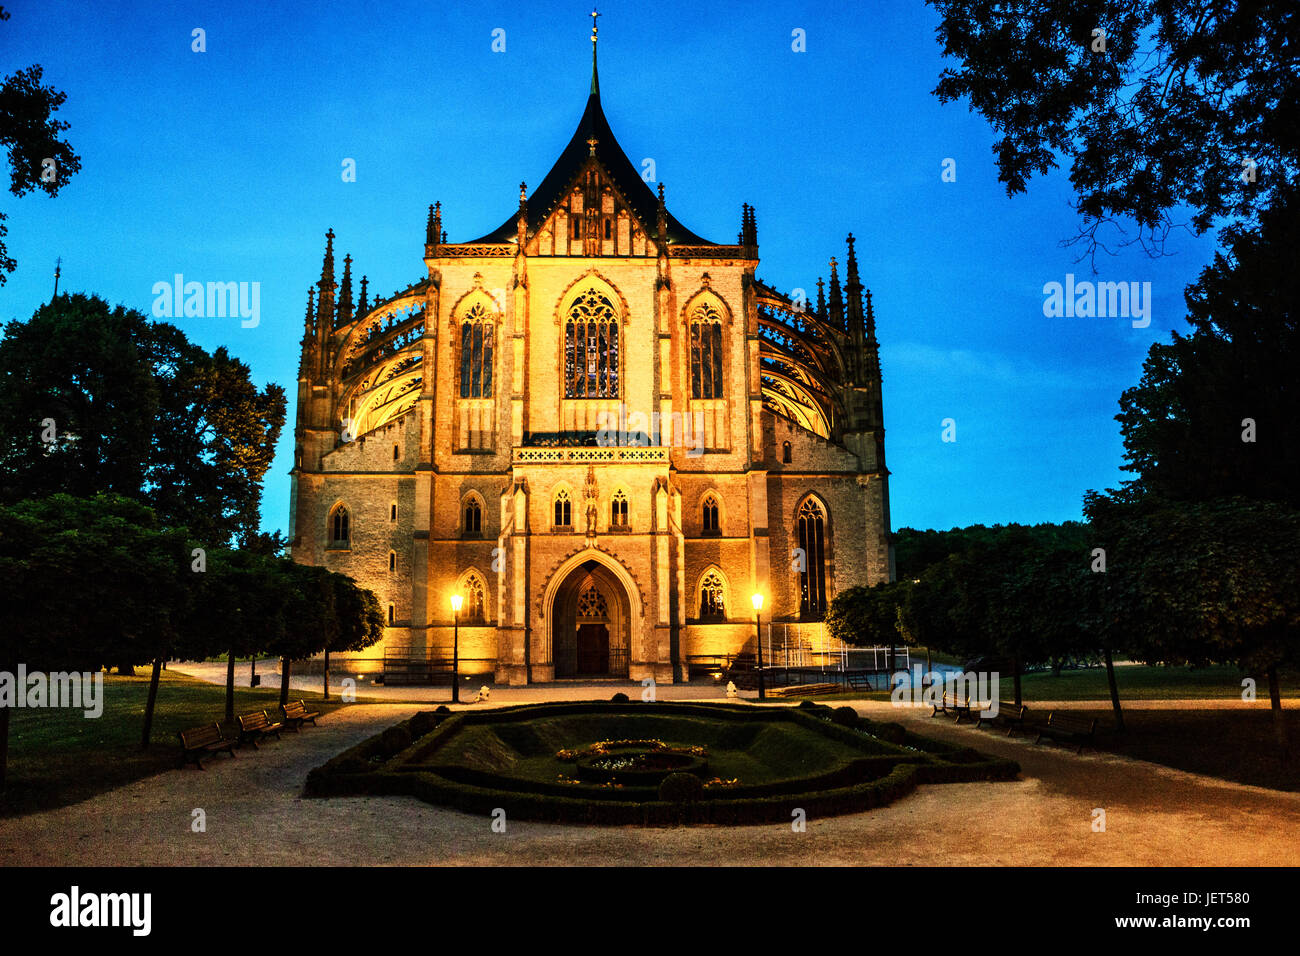 Éclairage nocturne de la St. Barbara Cathedral Kutna Hora République tchèque, Europe Bohême centrale, UNESCO, site du patrimoine mondial crépuscule nocturne Banque D'Images